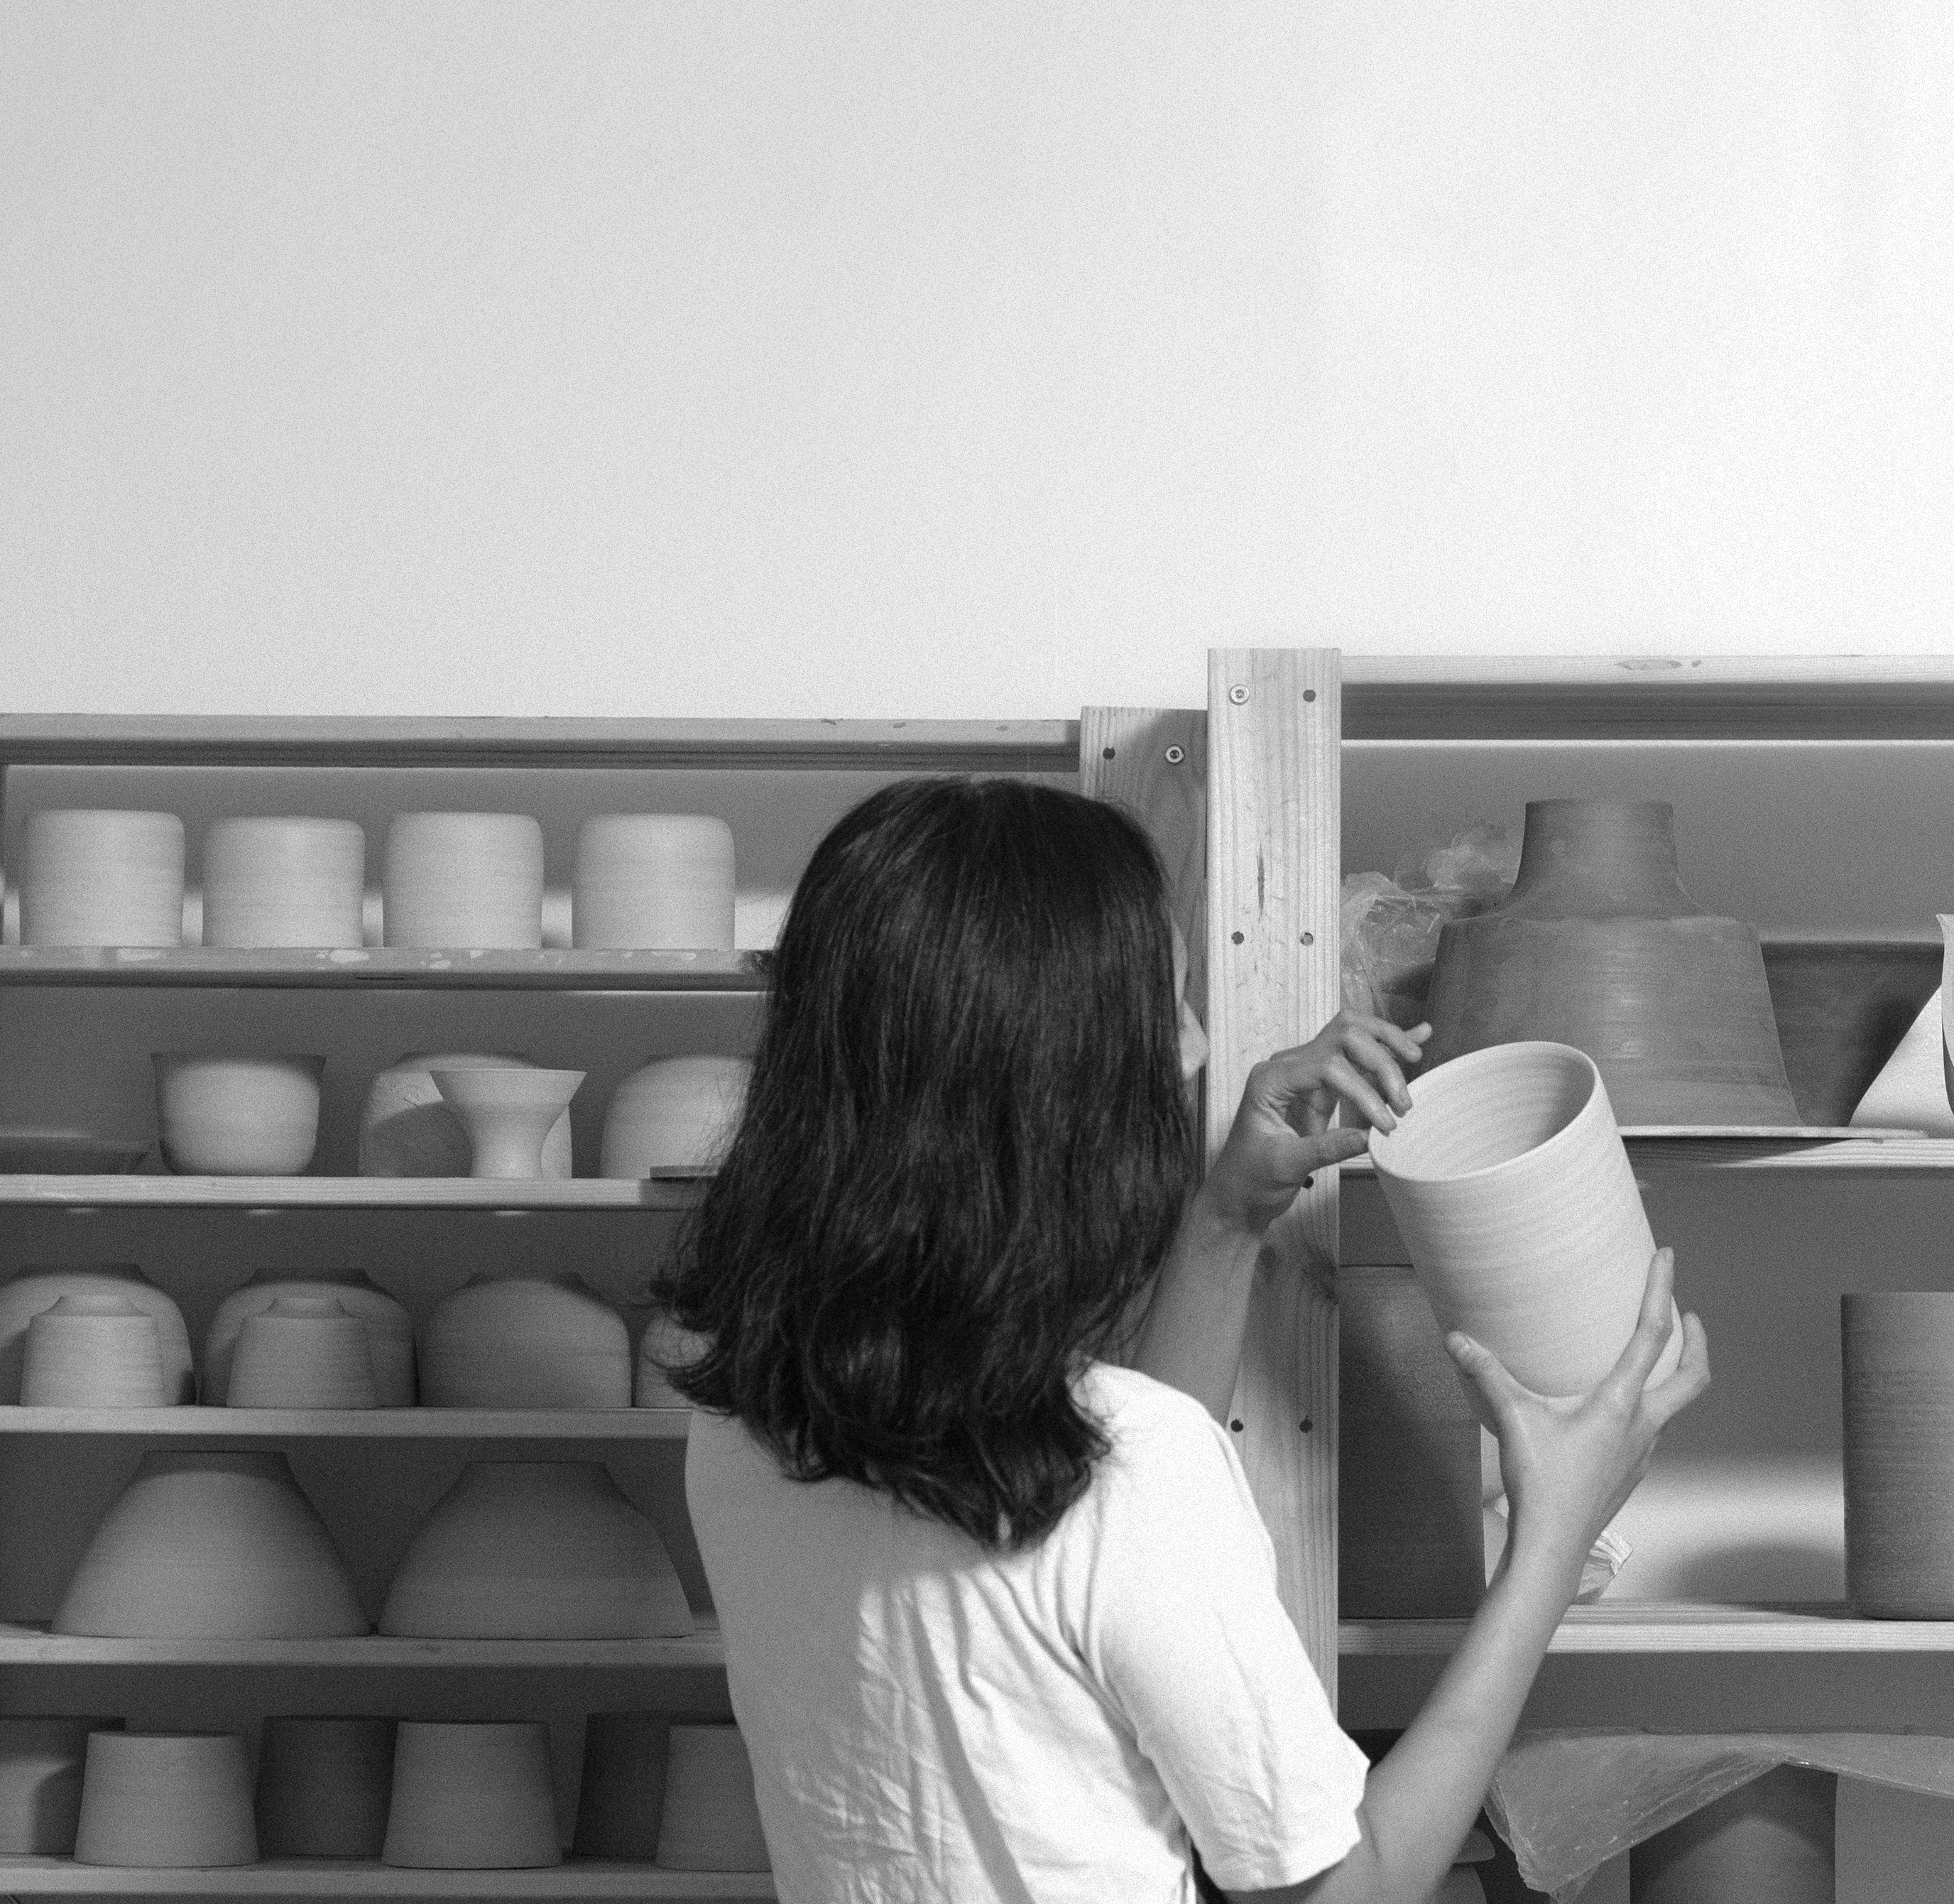 Candice Aquino, Creator of Some Ceramics 